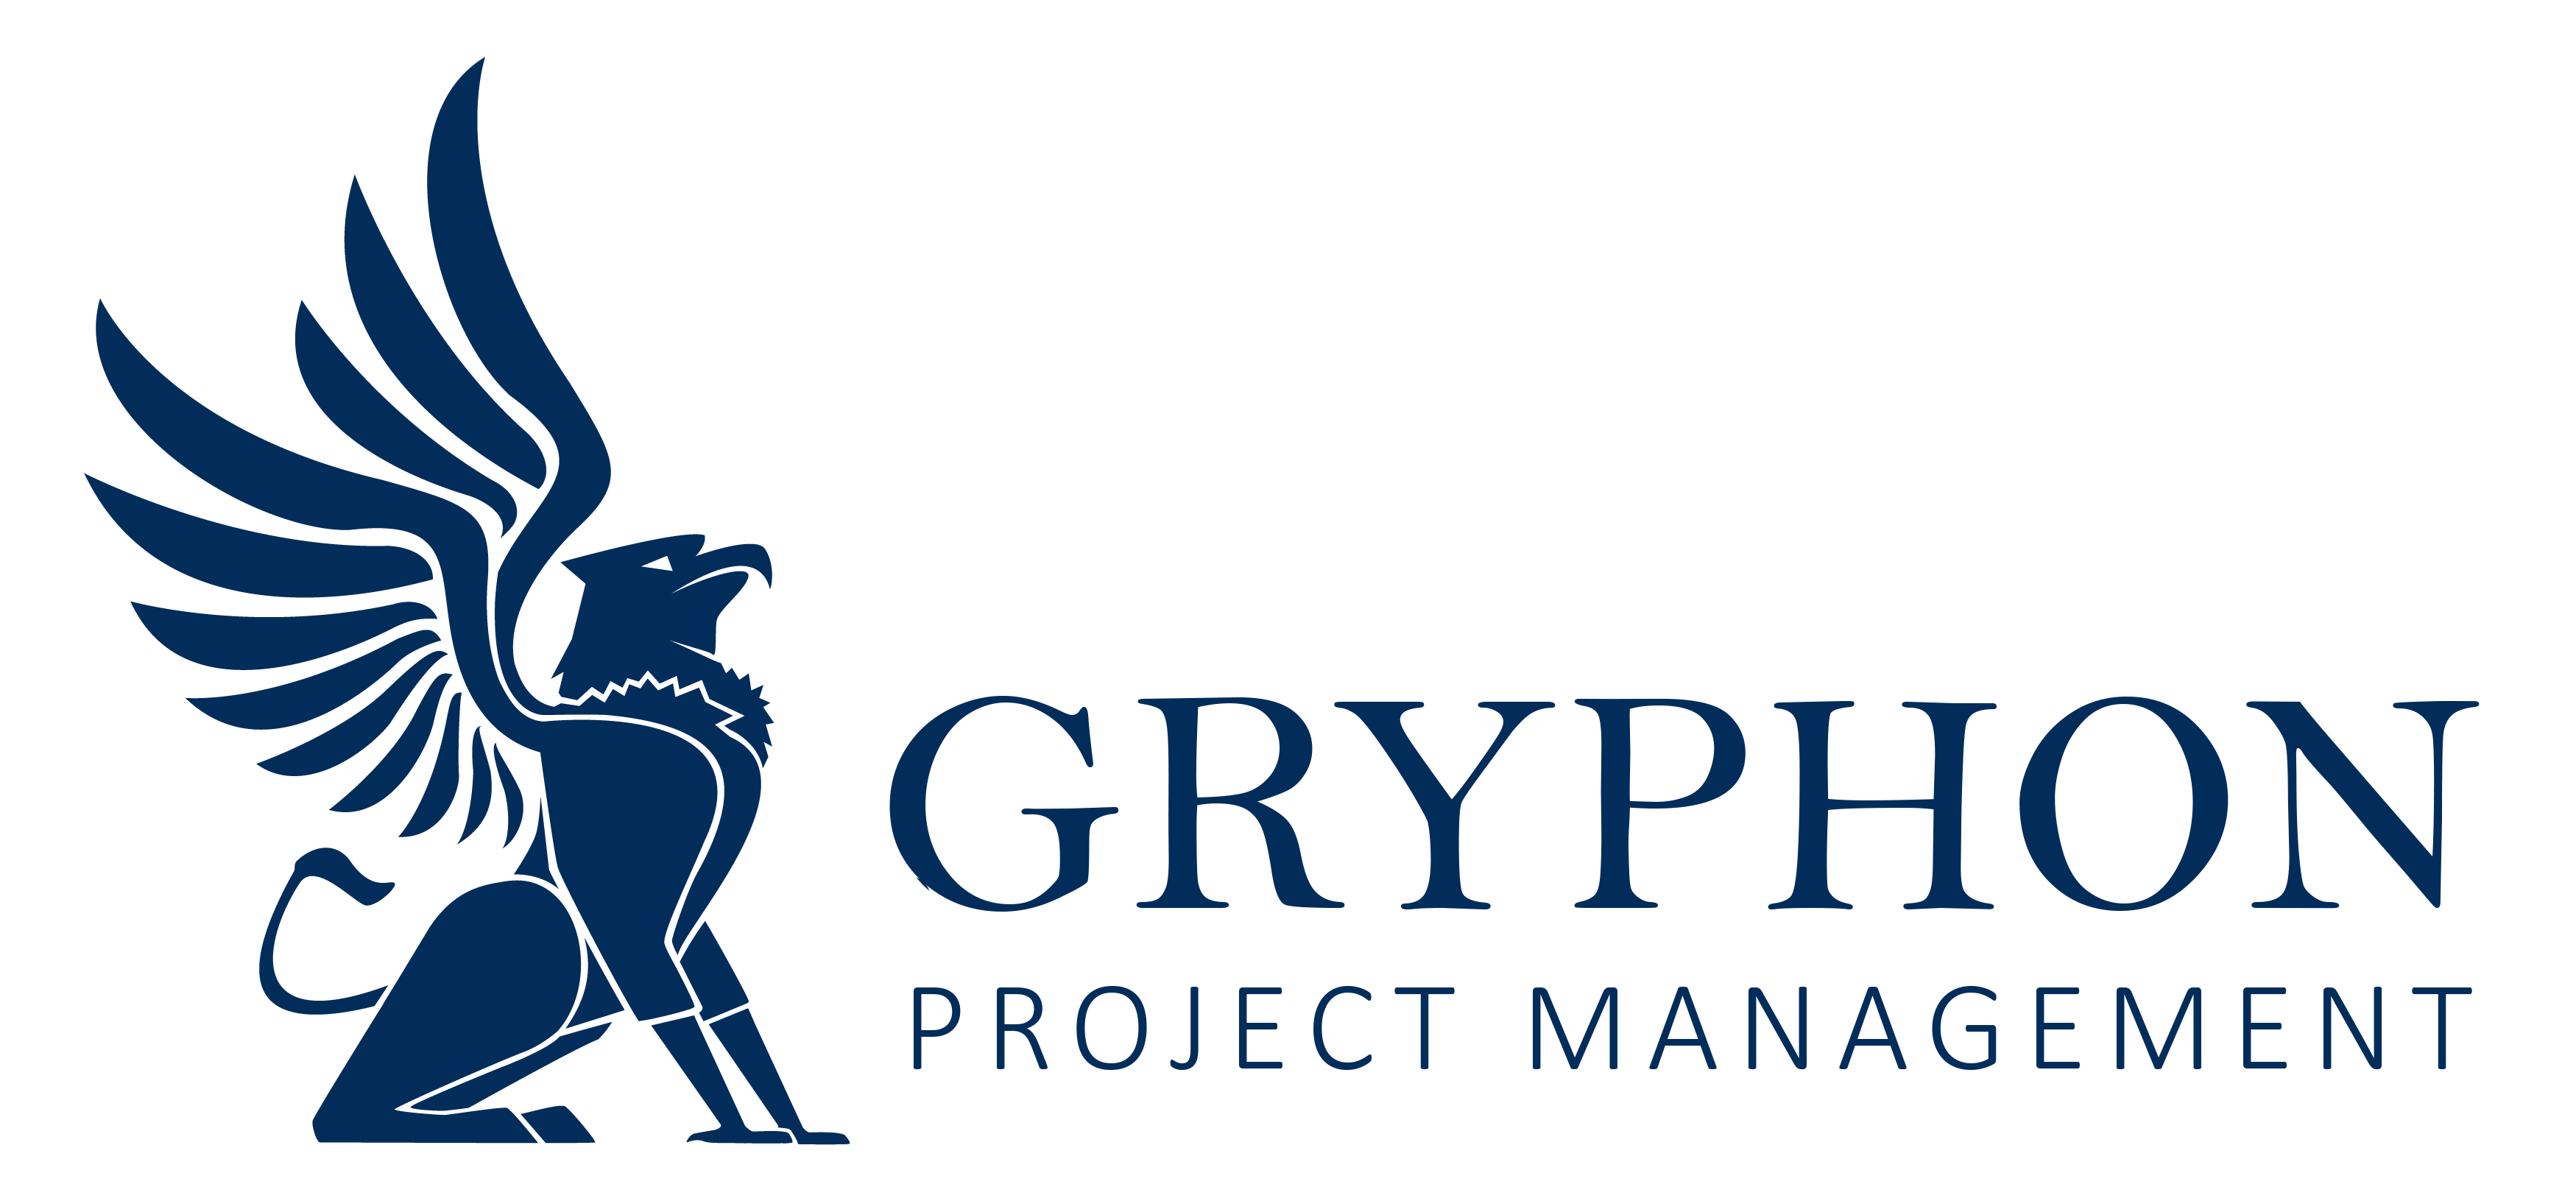 Gryphon Project Management